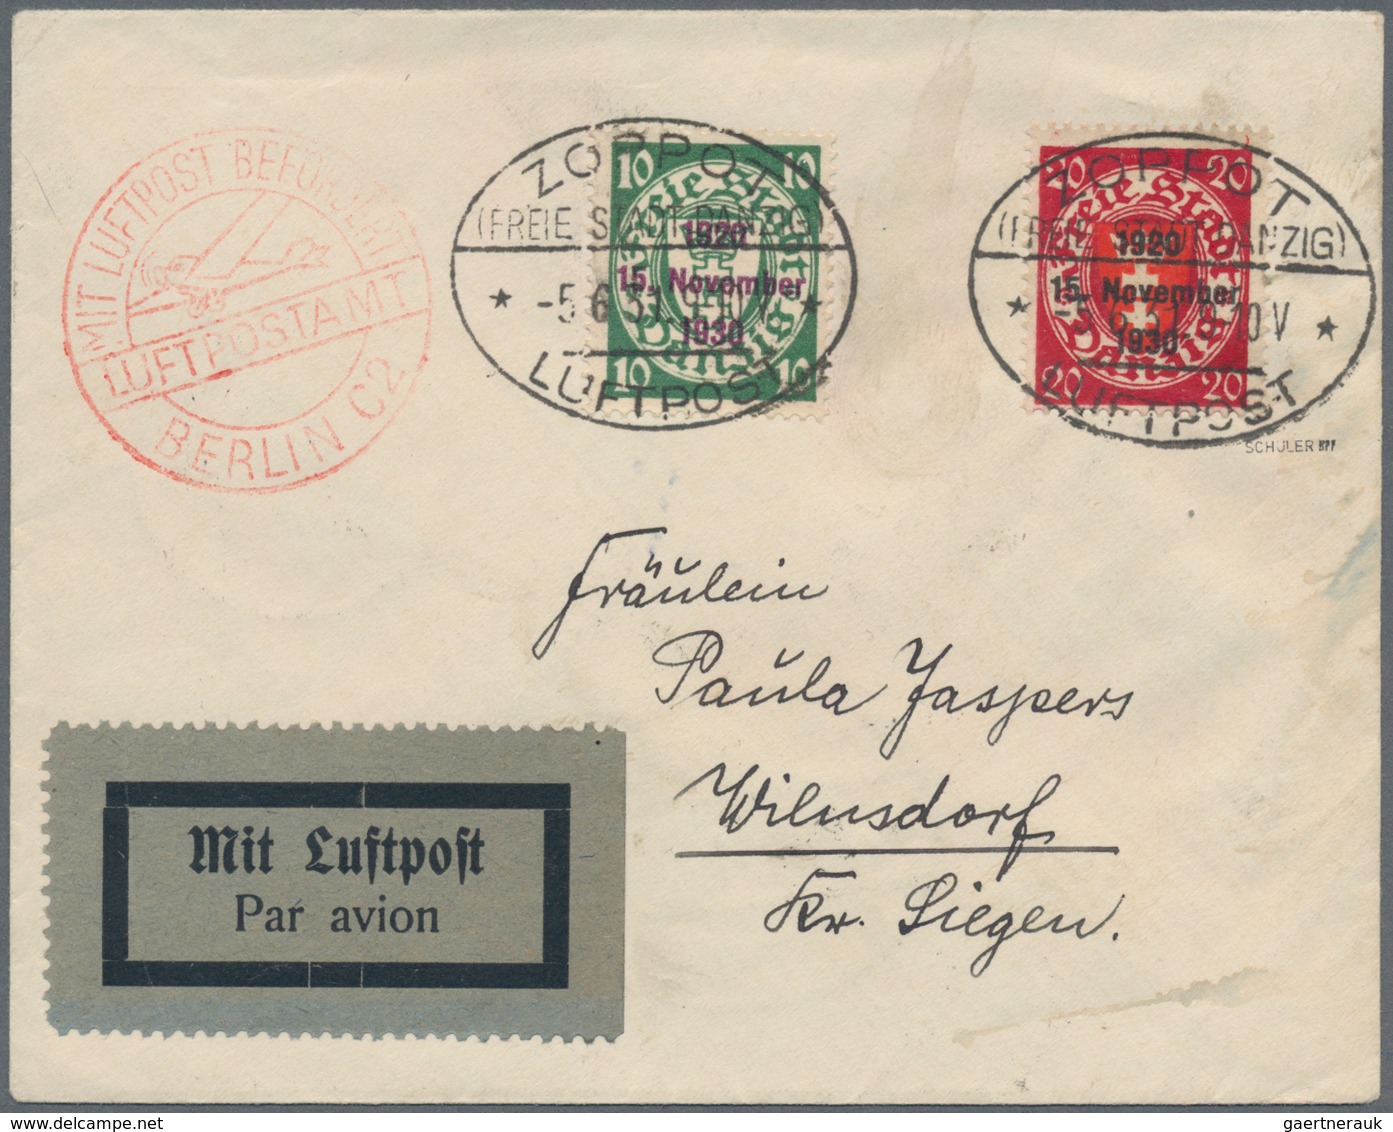 Danzig: 1898/1939 (ca.), interessanter Posten von über 70 Belegen, dabei seltene Frankaturen, R-, Ex